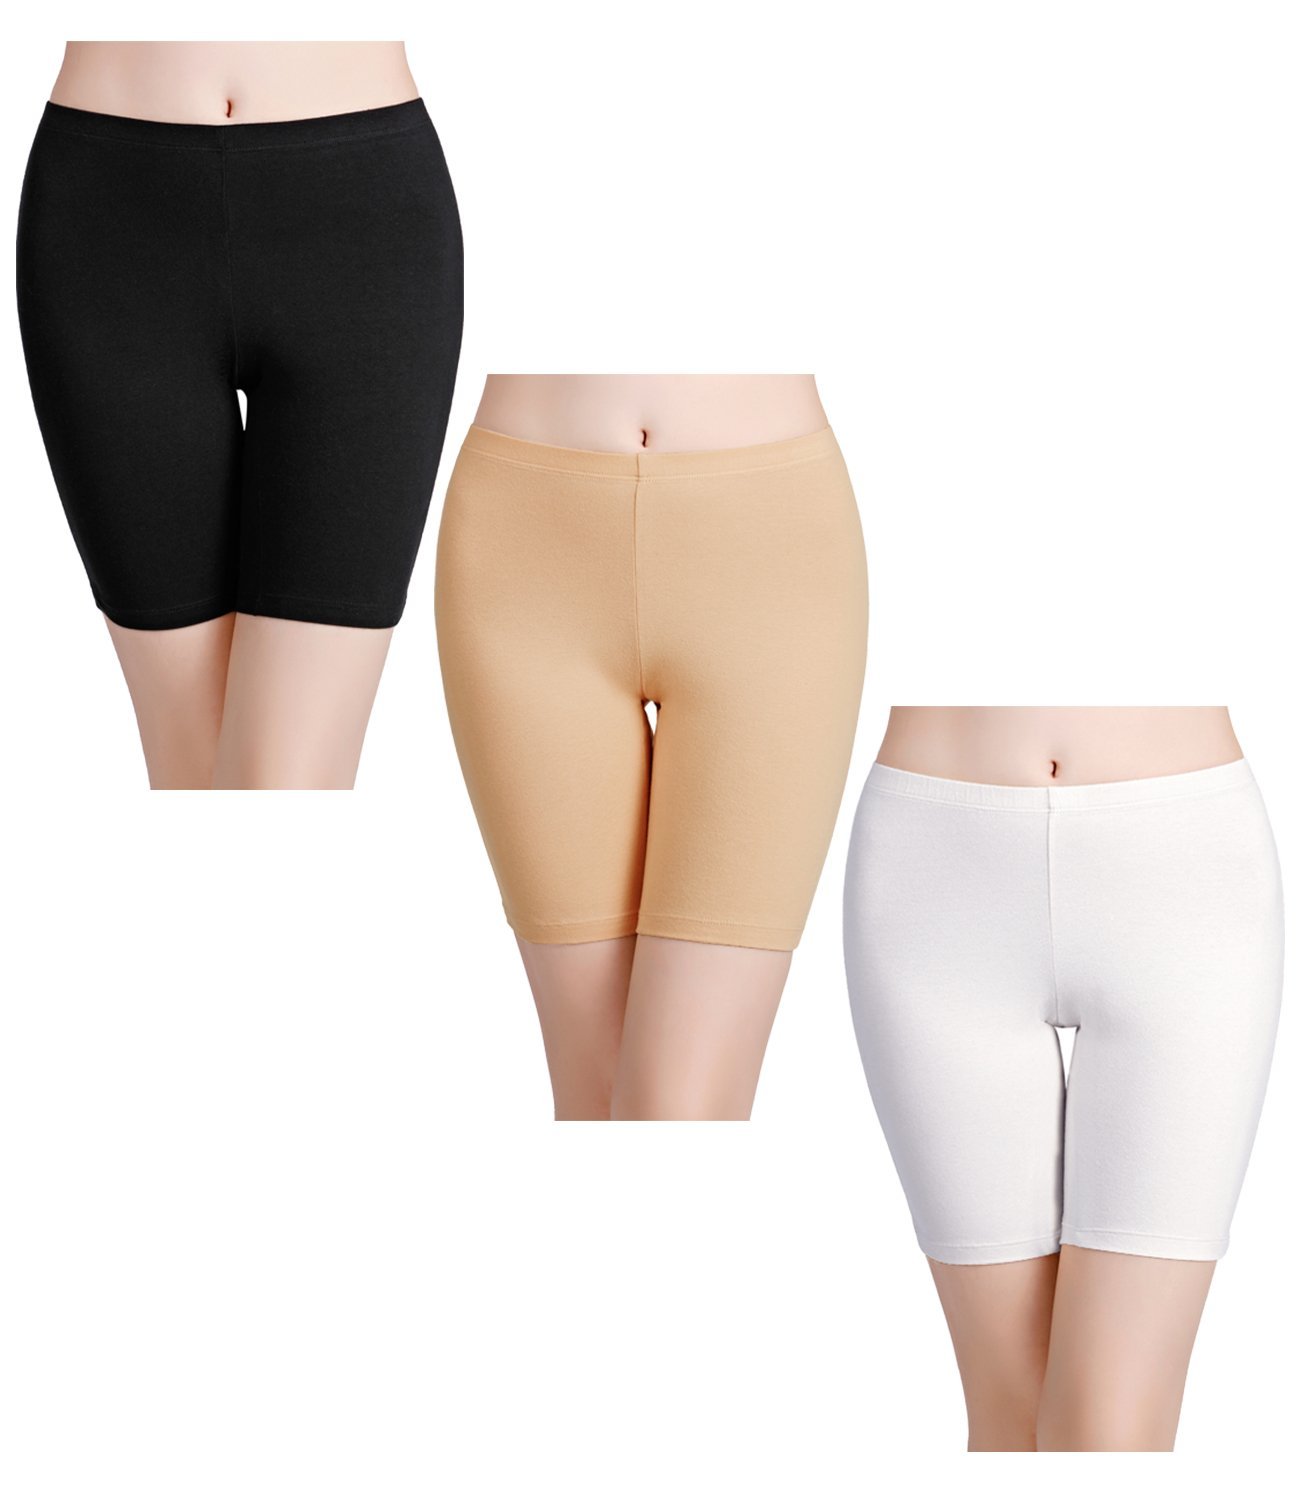 wirarpa Women's Cotton Boxer Briefs Underwear Anti Chafe Boy Shorts 3  Inseam 4 Pack White Small